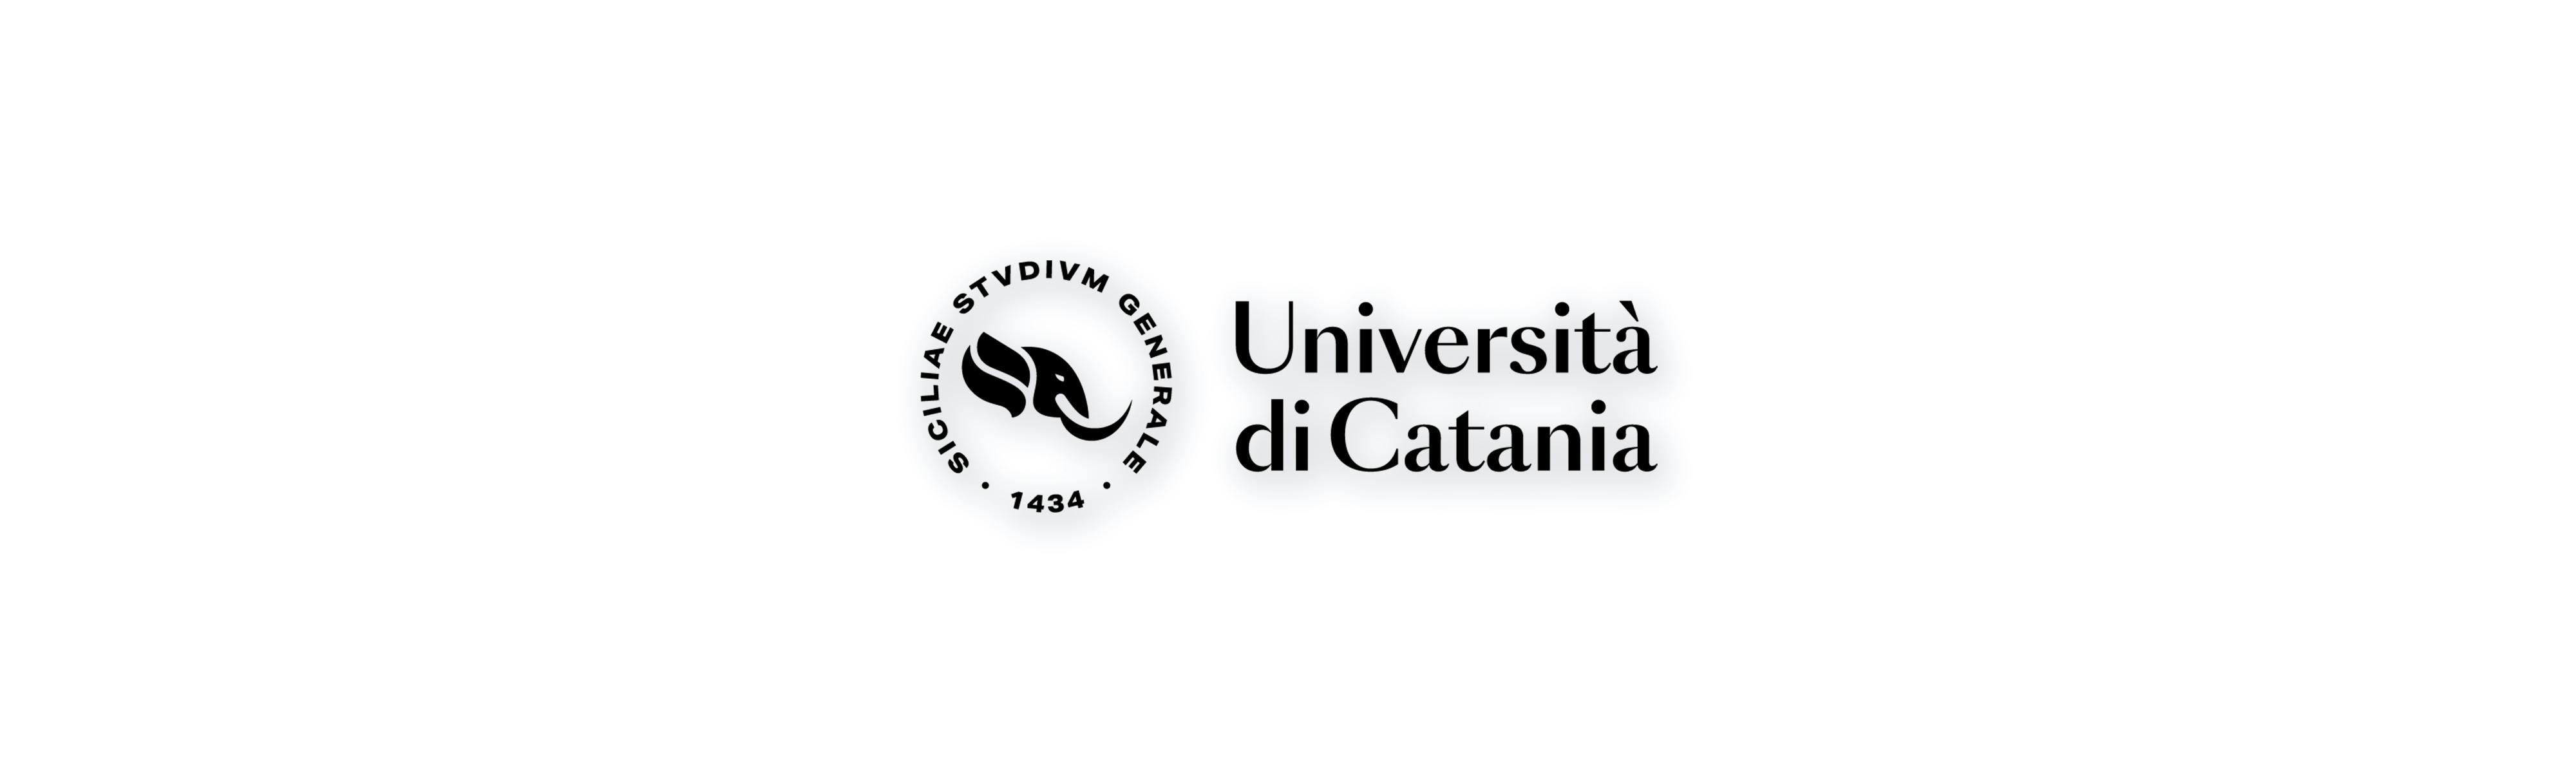 L'immagine mostra il logo dell'Università di Catania. Il logo è composto da un cerchio formato dalla scritta "SICILIAE STVDIVM GENERALE - 1434" con all'interno una rappresentazione grafica di un elefante (simbolo dell'università). Il logo è di colore nero su sfondo bianco con una leggera ombreggiatura al di sotto del logo.